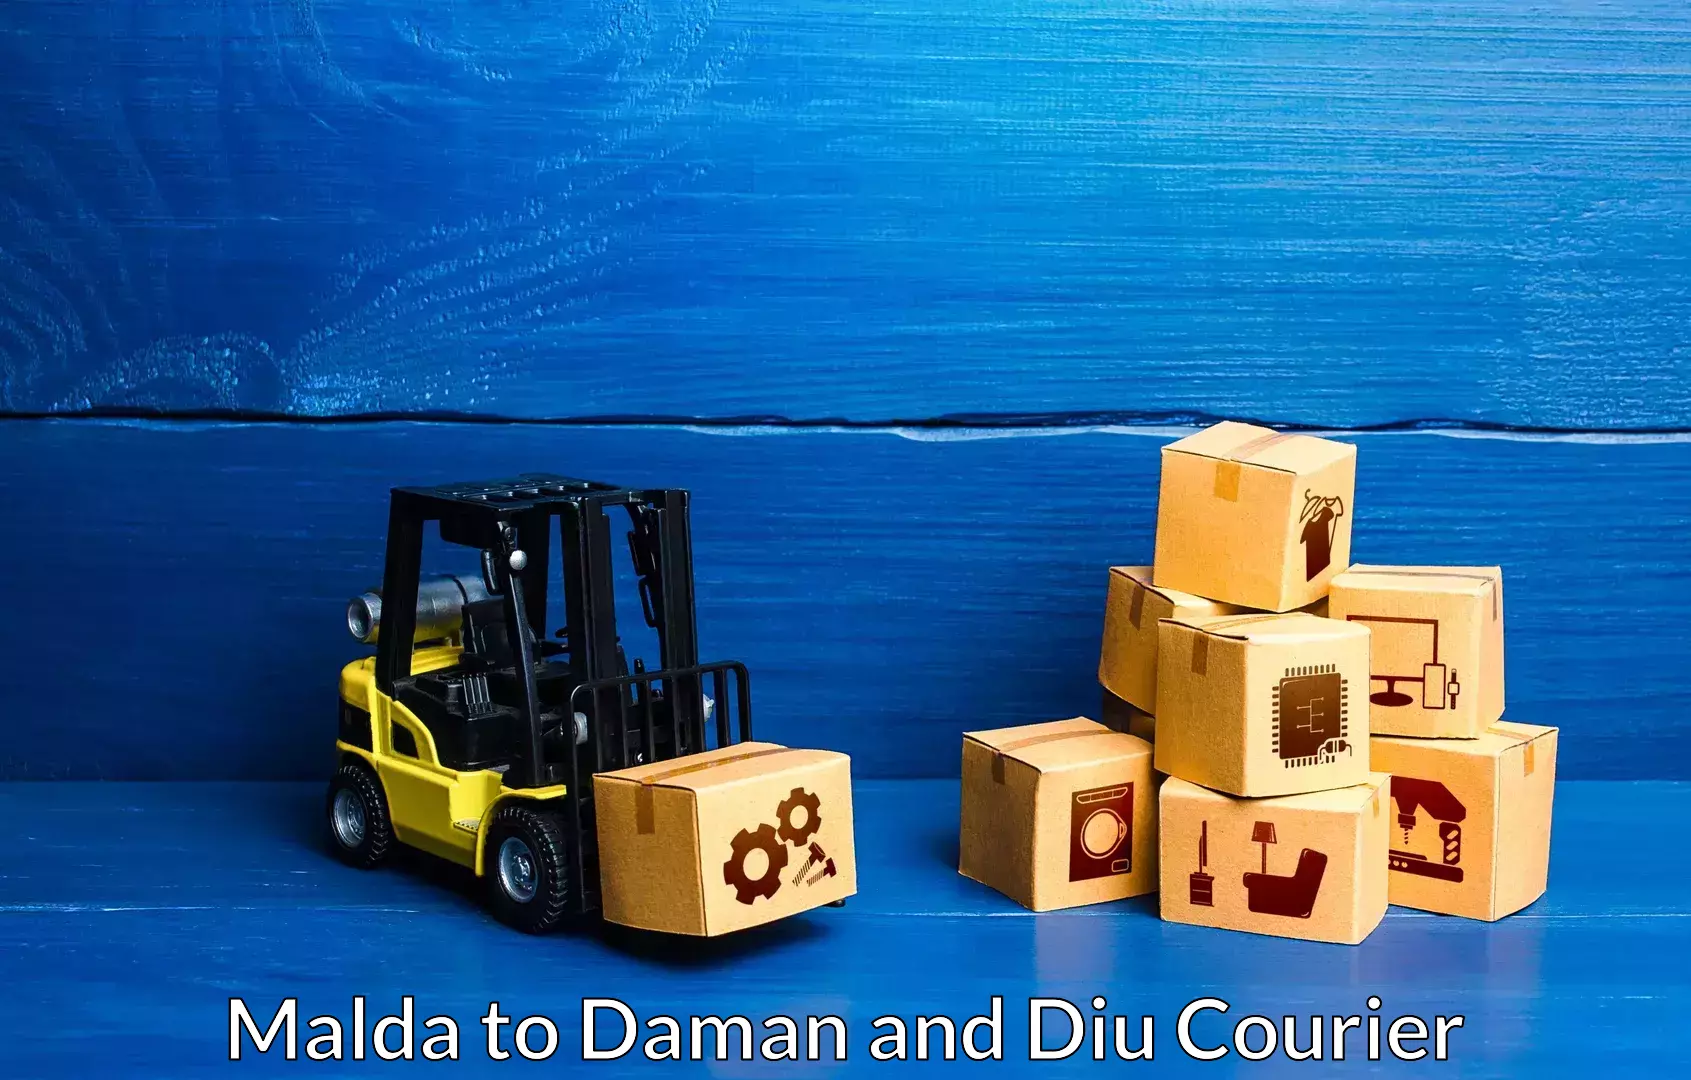 Furniture transport experts Malda to Daman